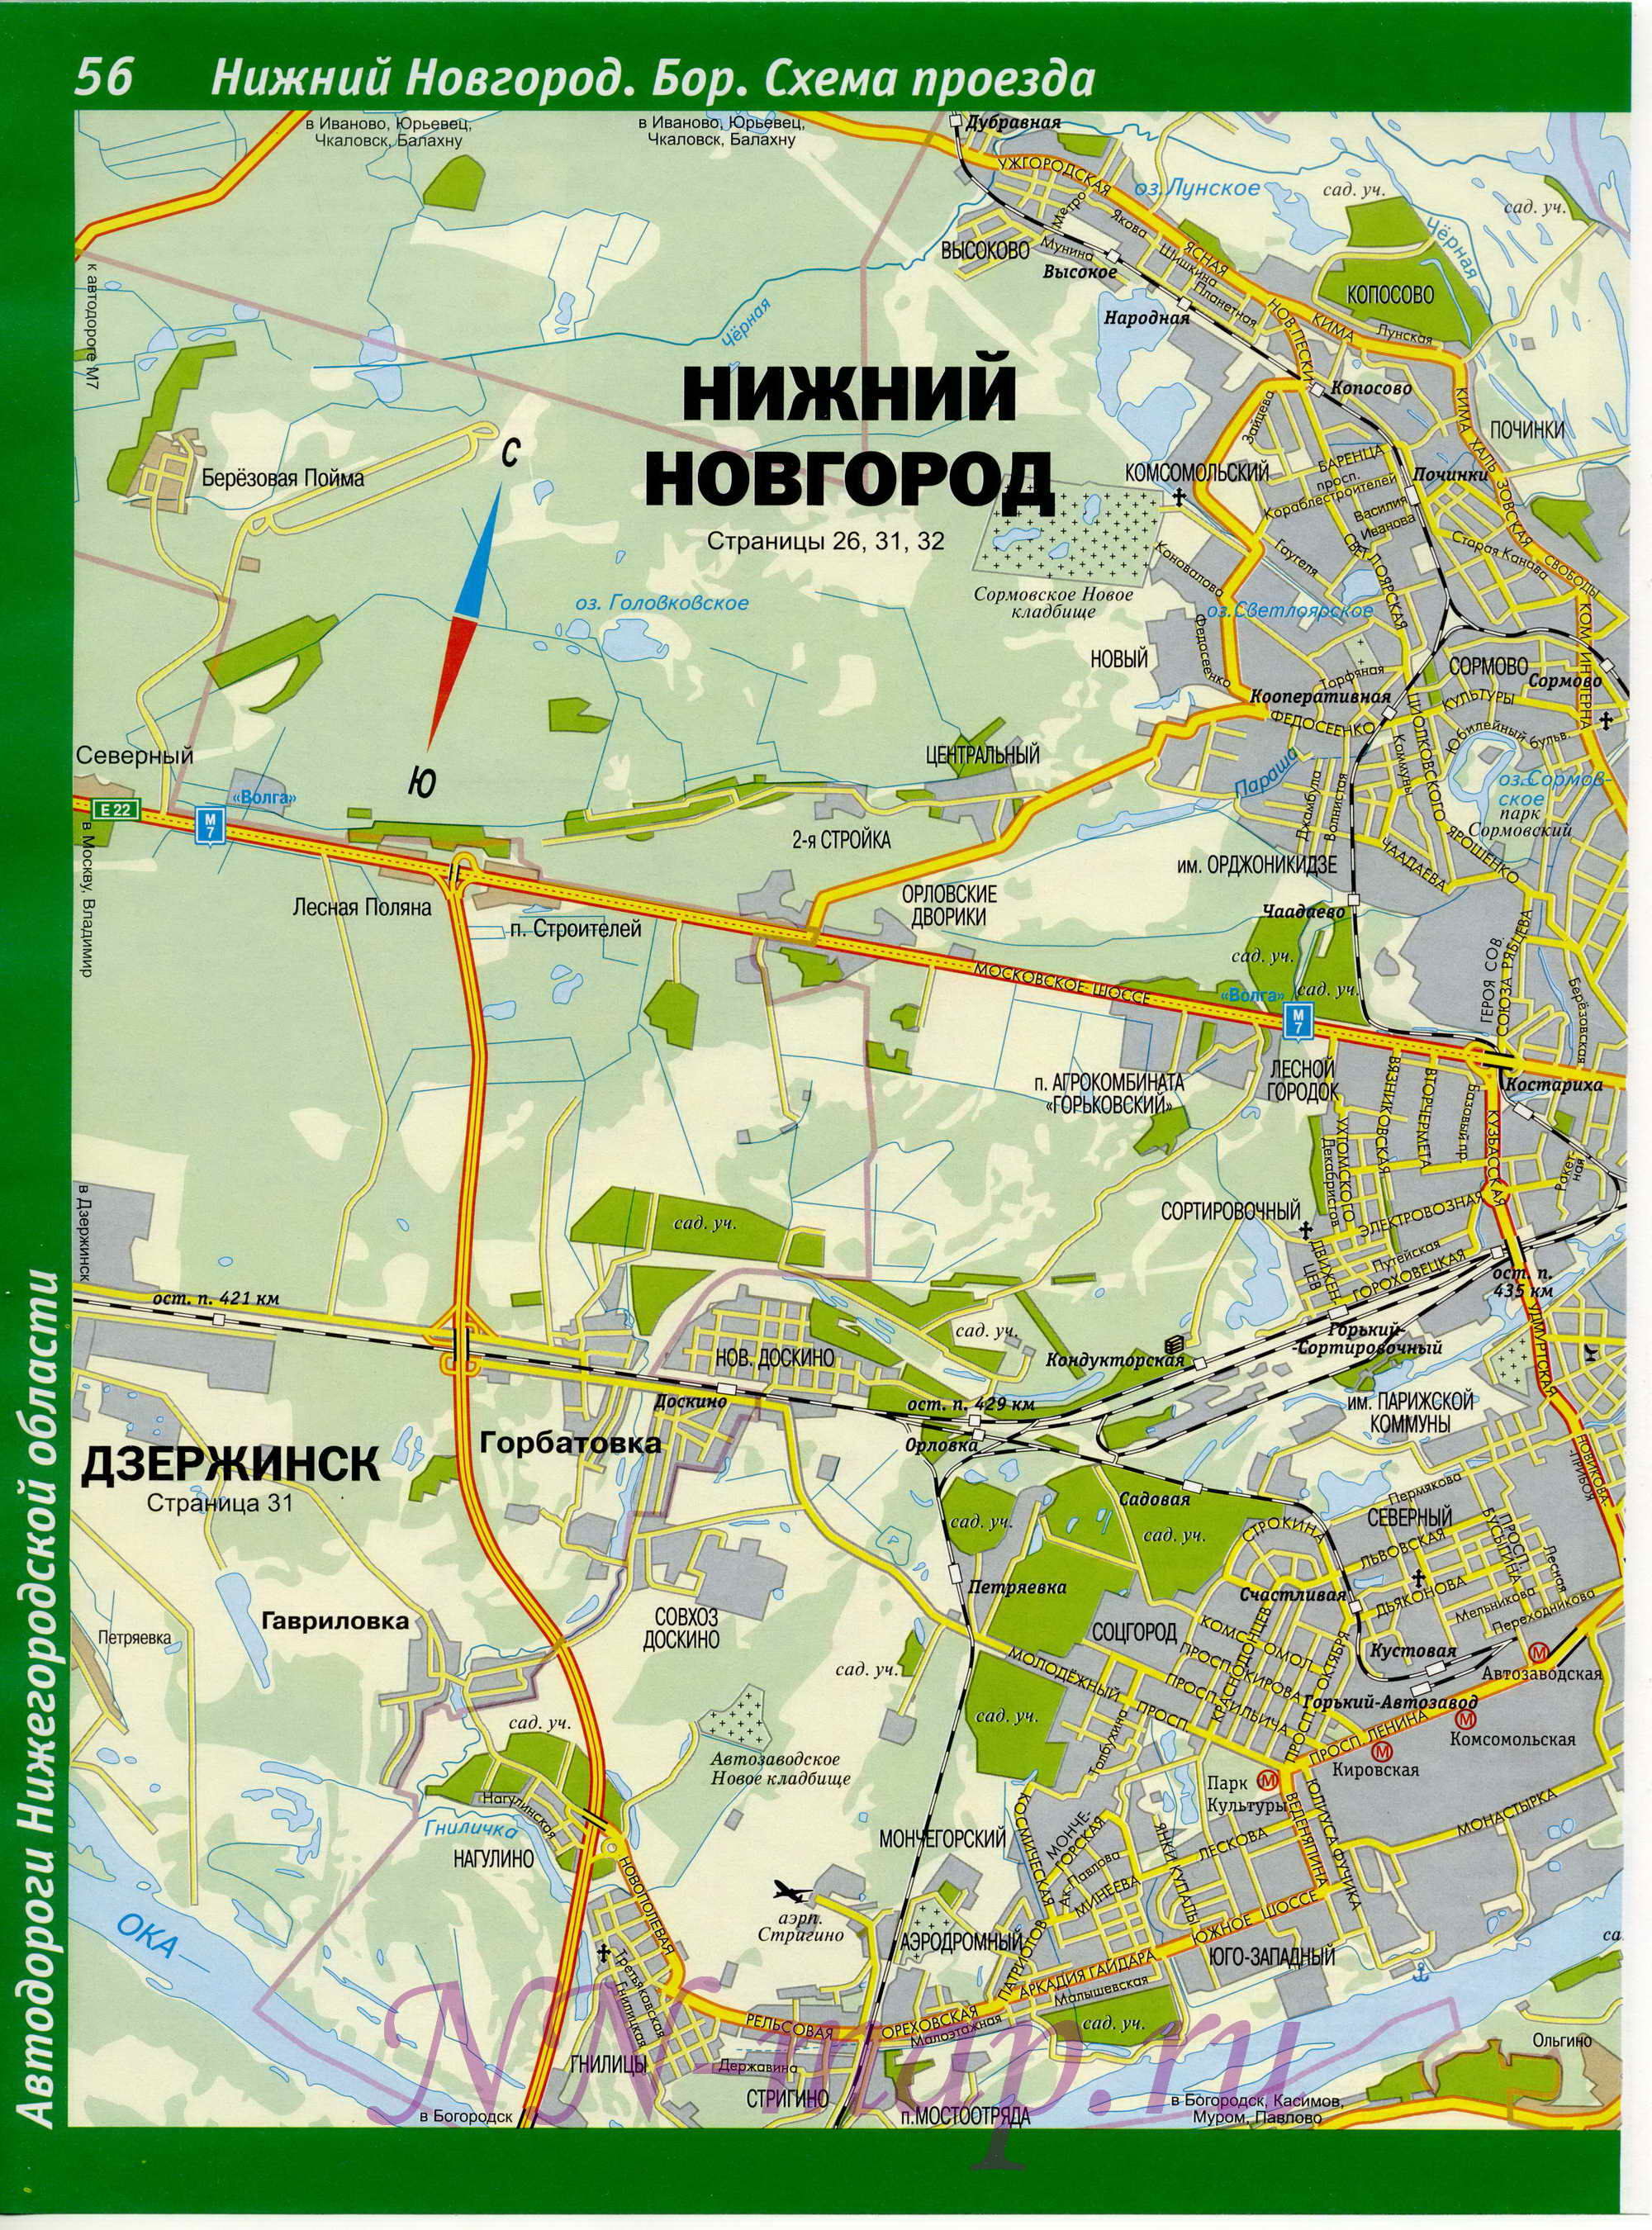  Карта Нижнего Новгорода. Карта улиц города Нижний Новгород. Схема проезда через Нижний Новгород, A0 - 